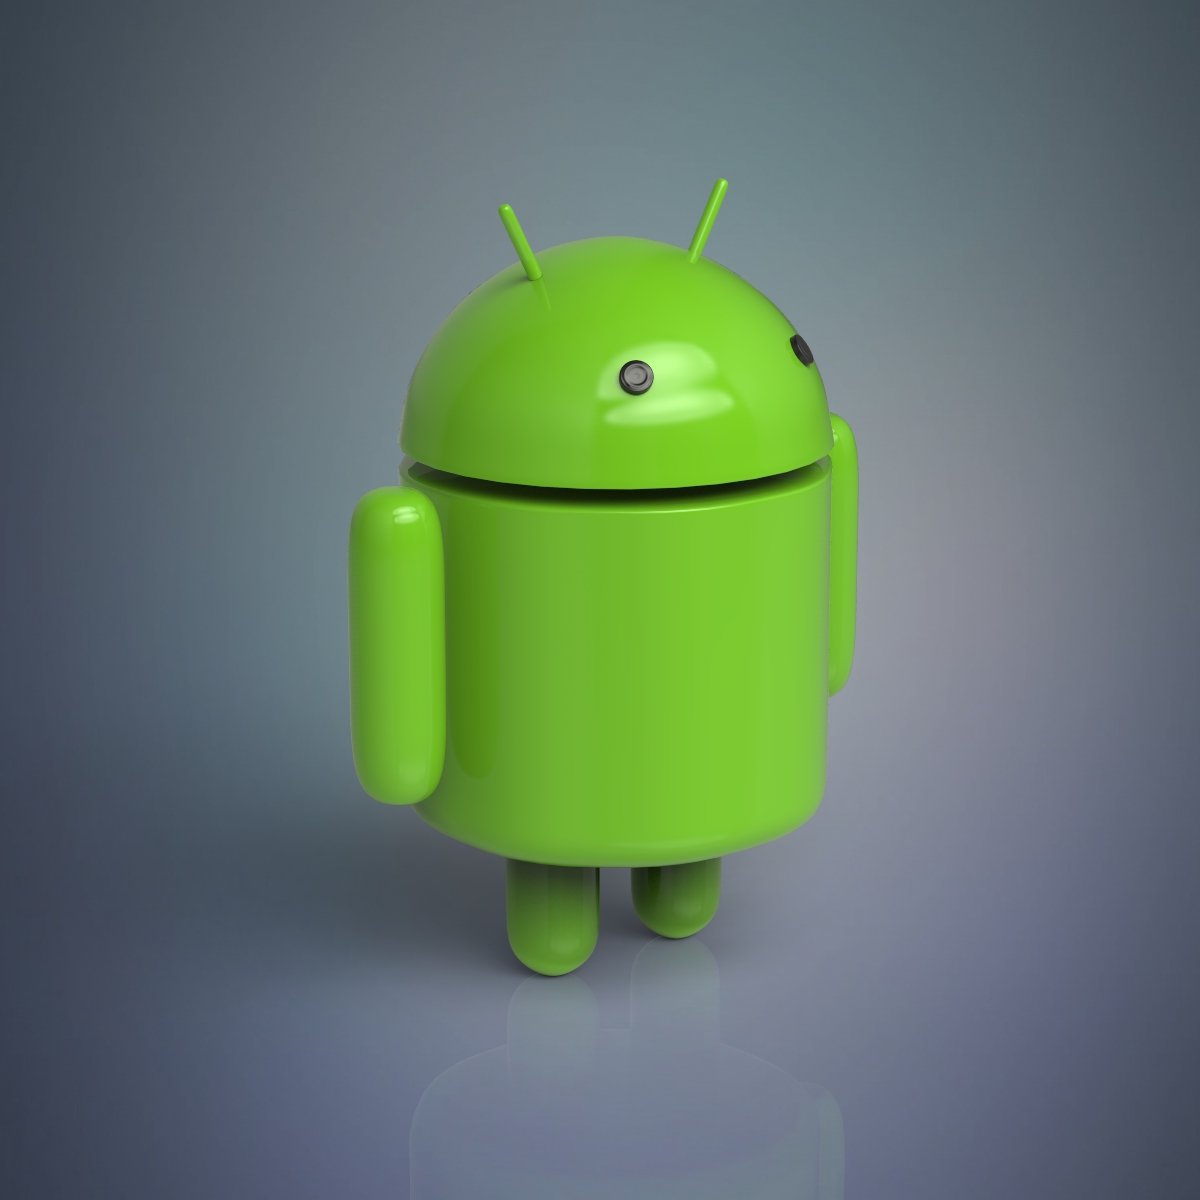 Toy android. Модель андроид. Android 3д модель. Андроид 3д. Андроид игрушка.